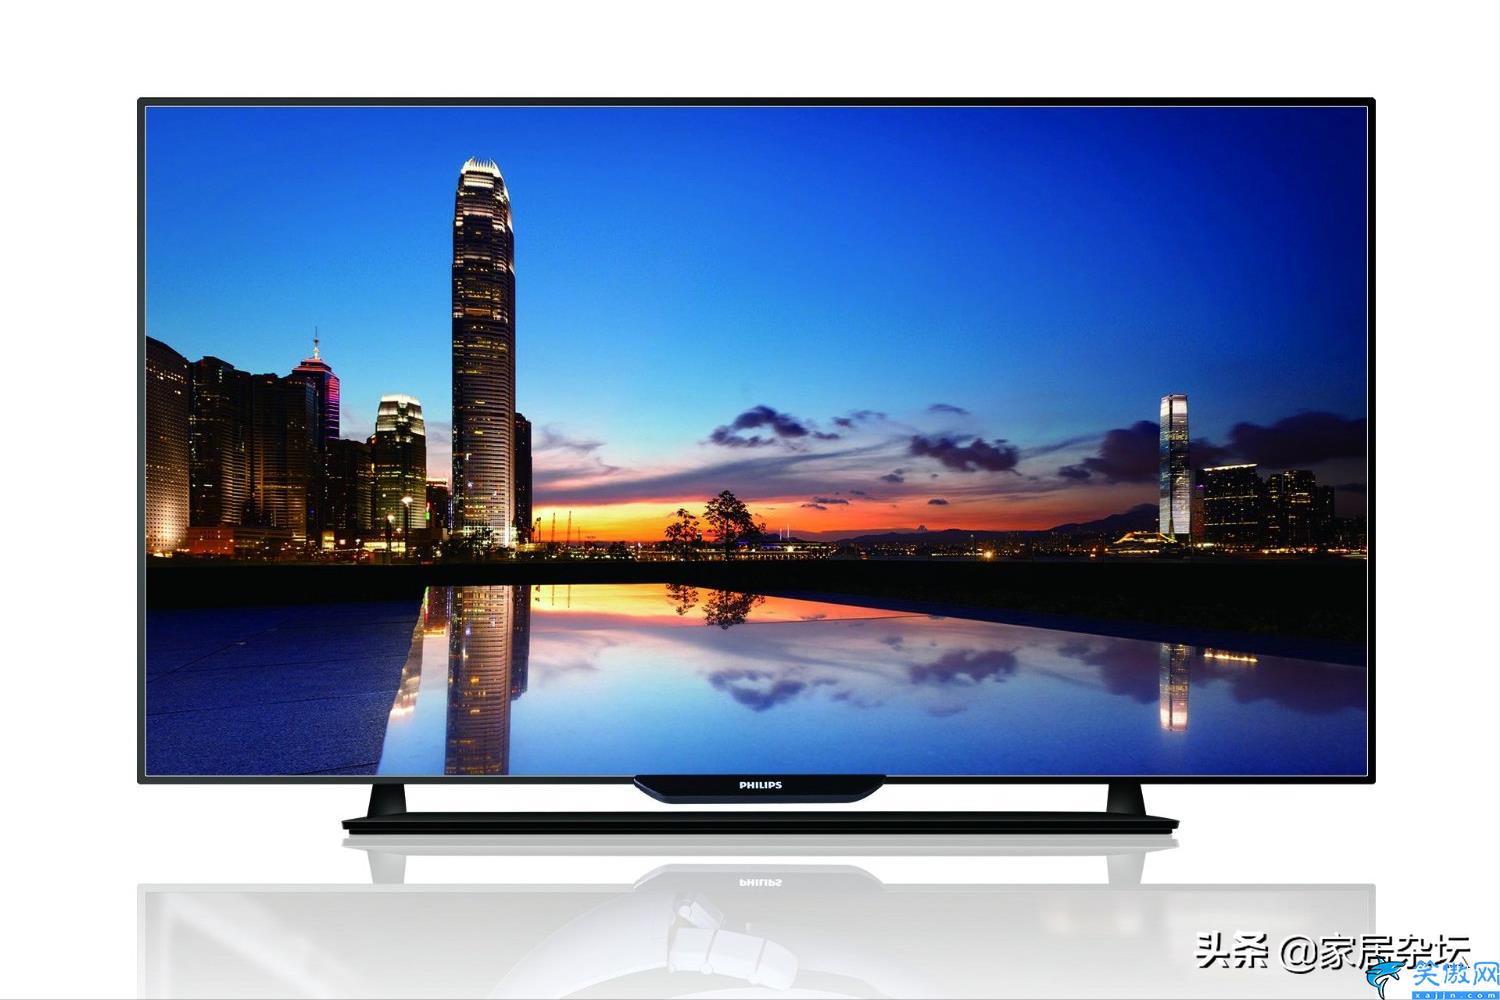 dled与oled电视的区别,LED电视和OLED电视选购建议